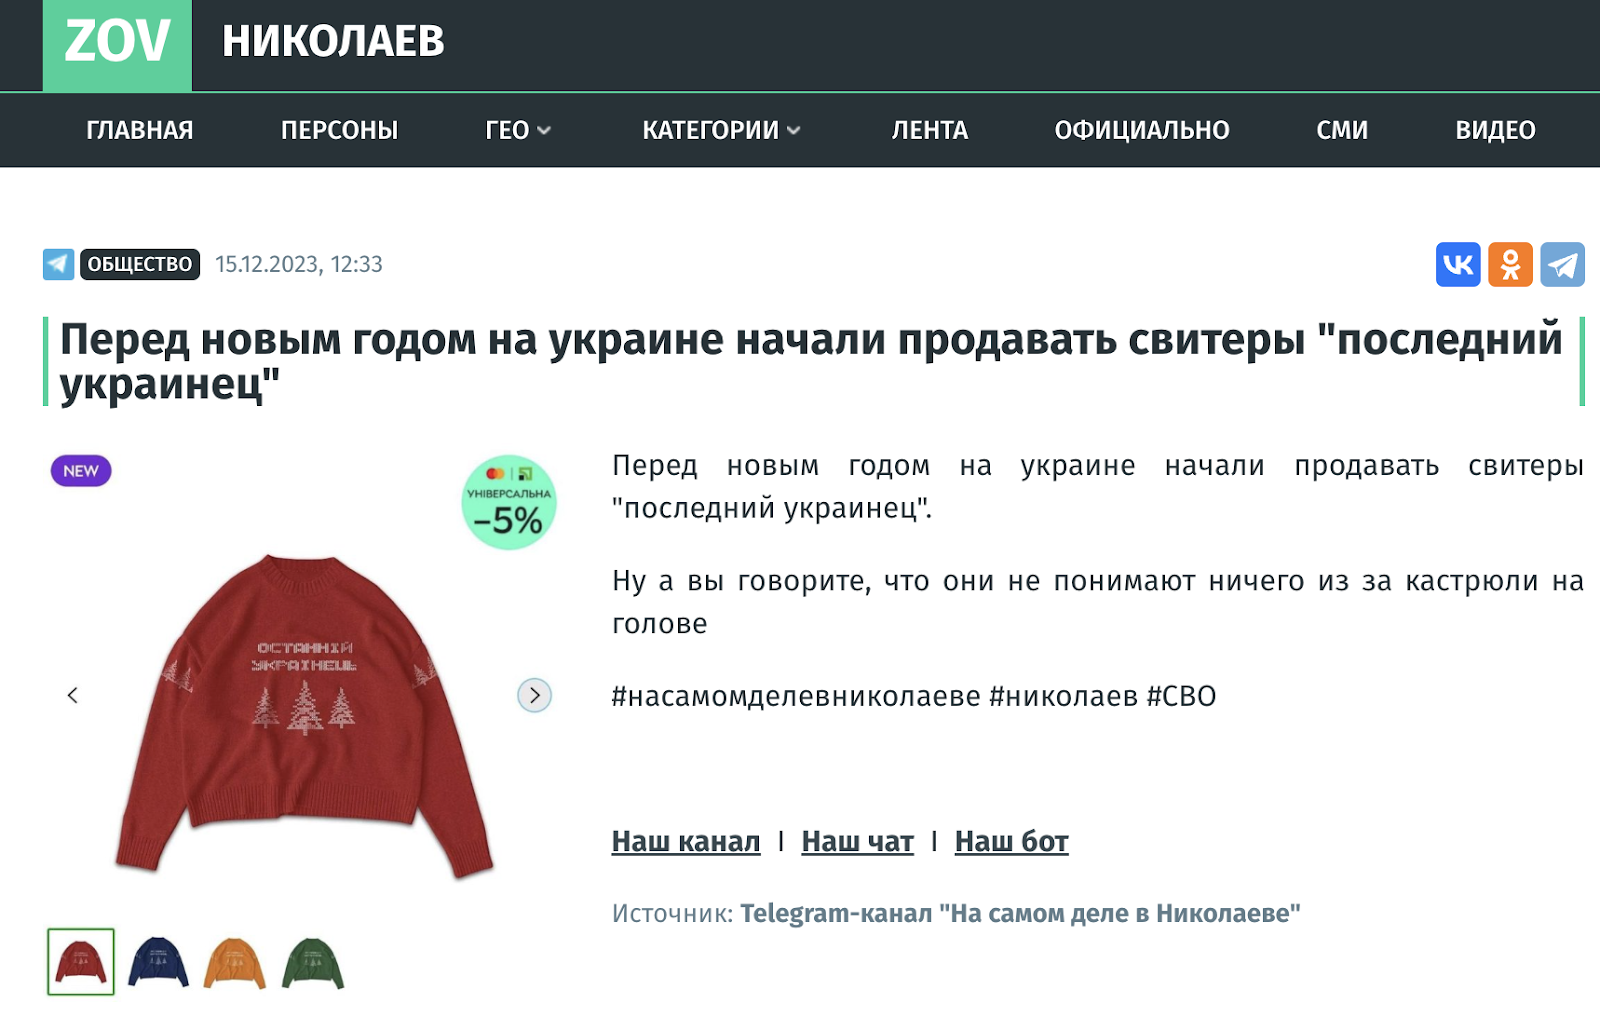 Новорічний светр "Останній українець" з Rozetka виявився фейком пропагандистів. Фото